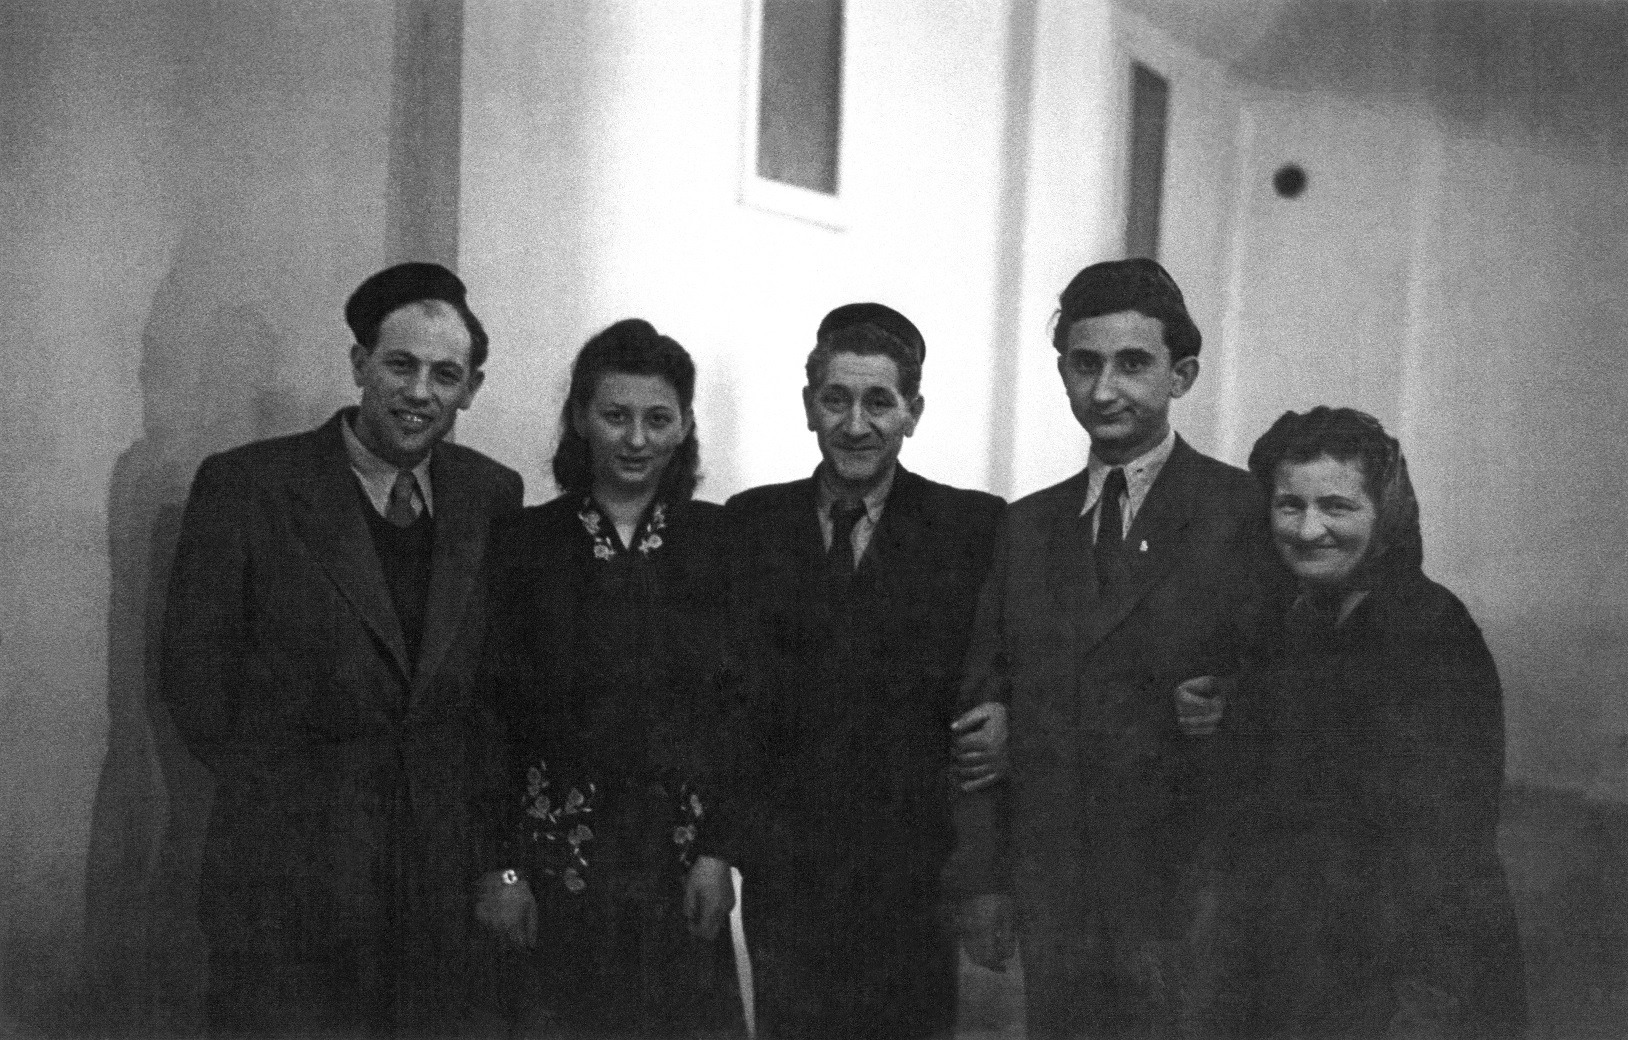 Fête de Pessah 1947 à la synagogue : Samuel Mandelbaum, deuxième à partir de la droite. Collection de la communauté juive de Wiesbaden